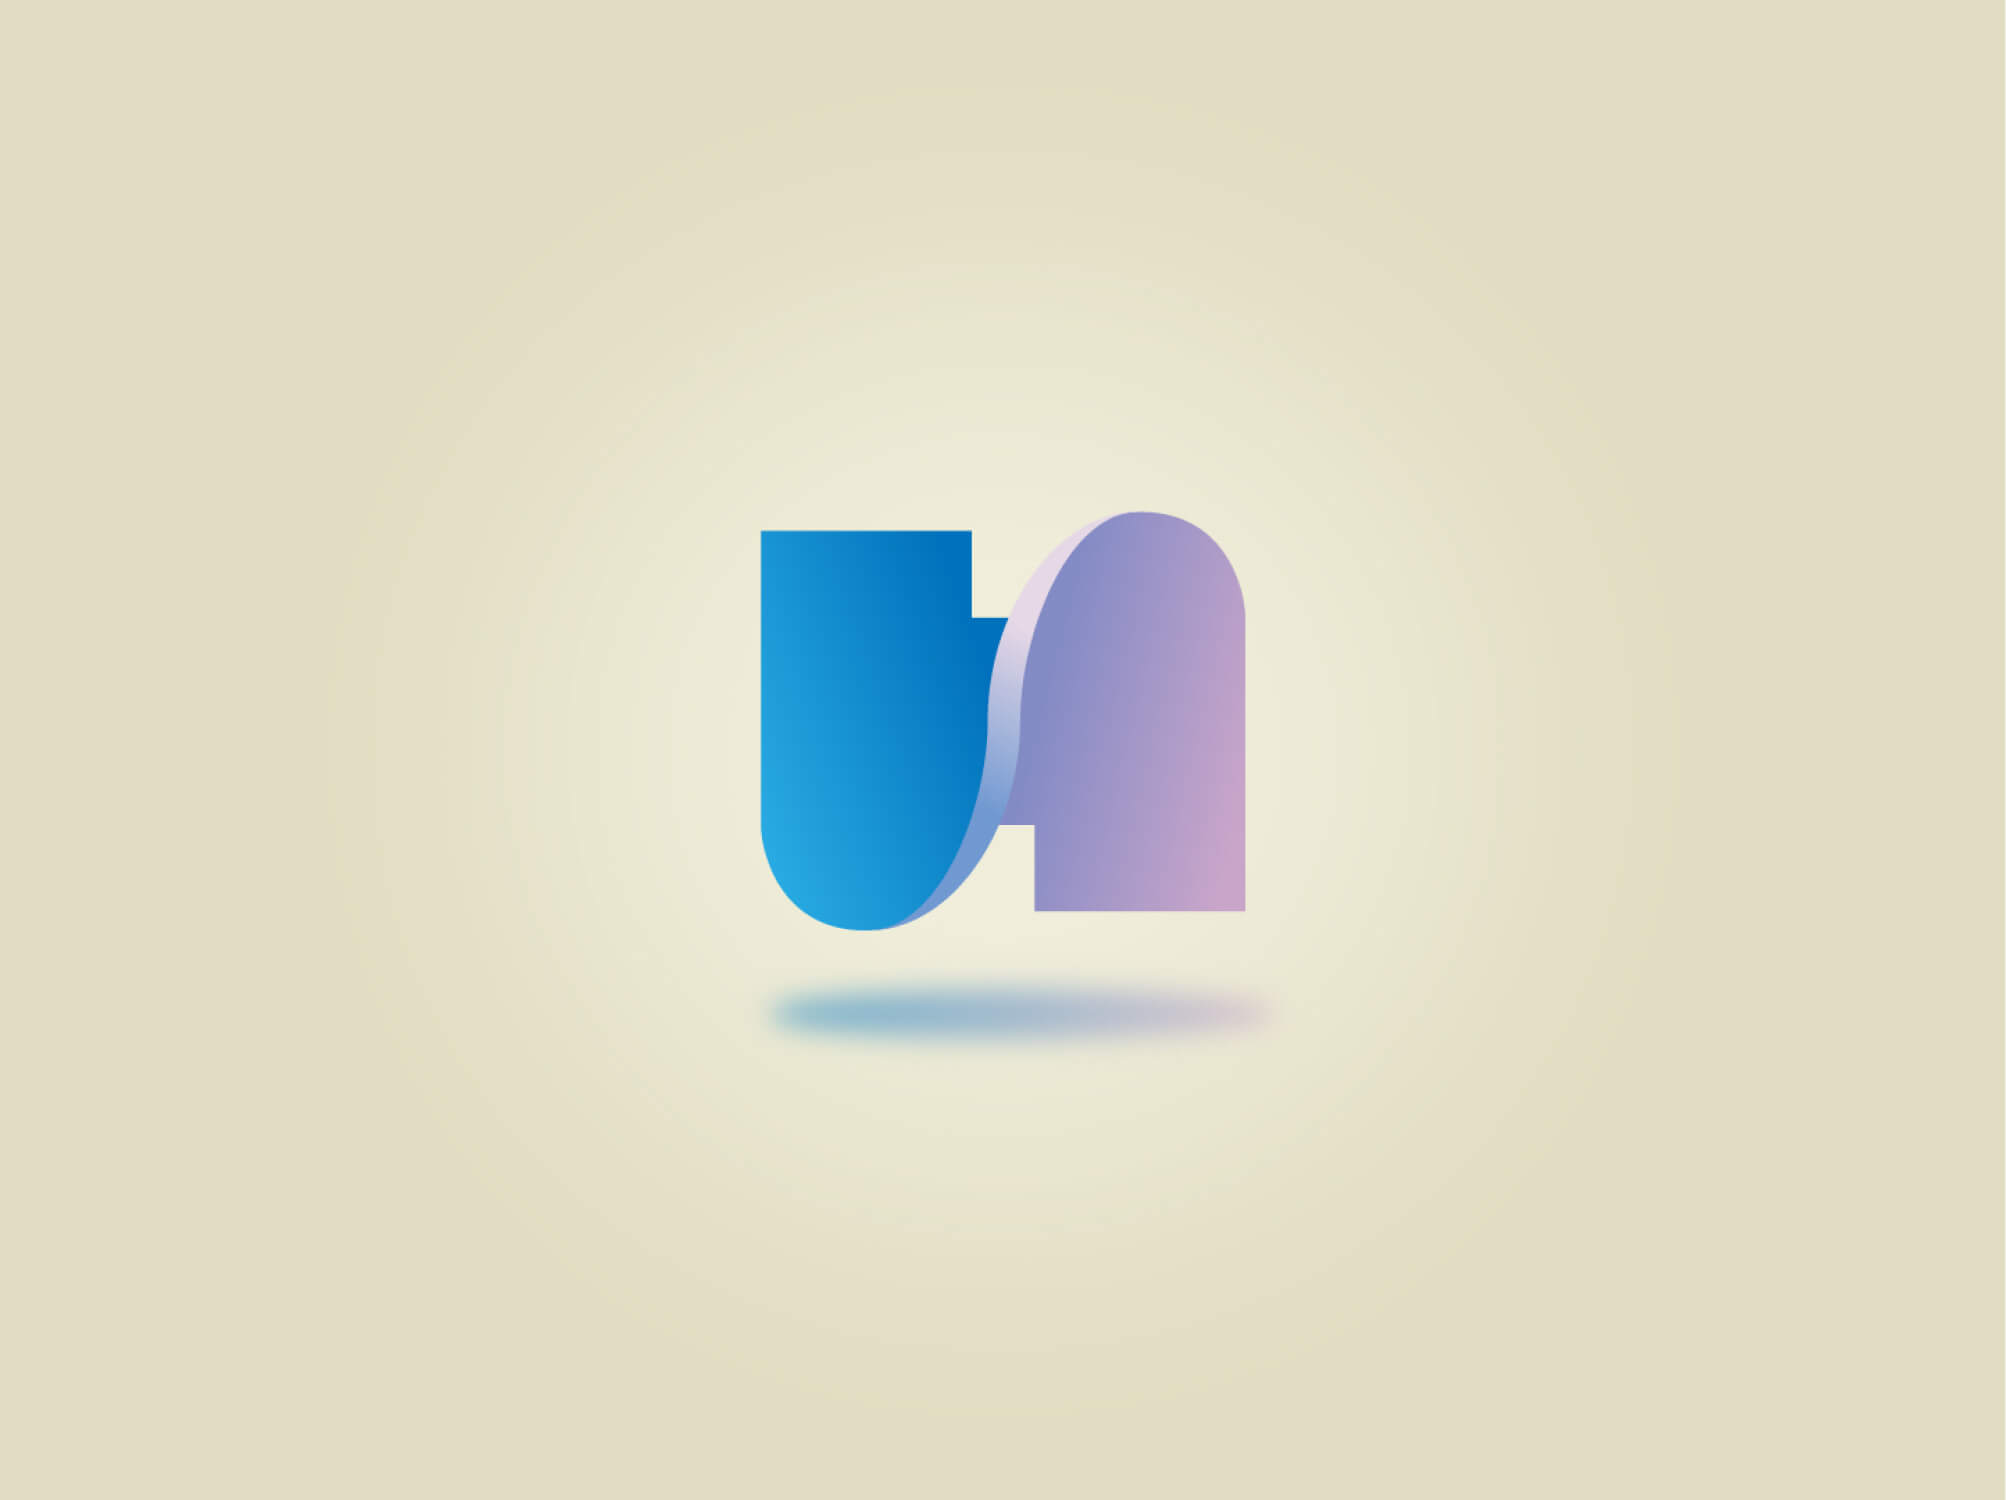 Single letter logo design